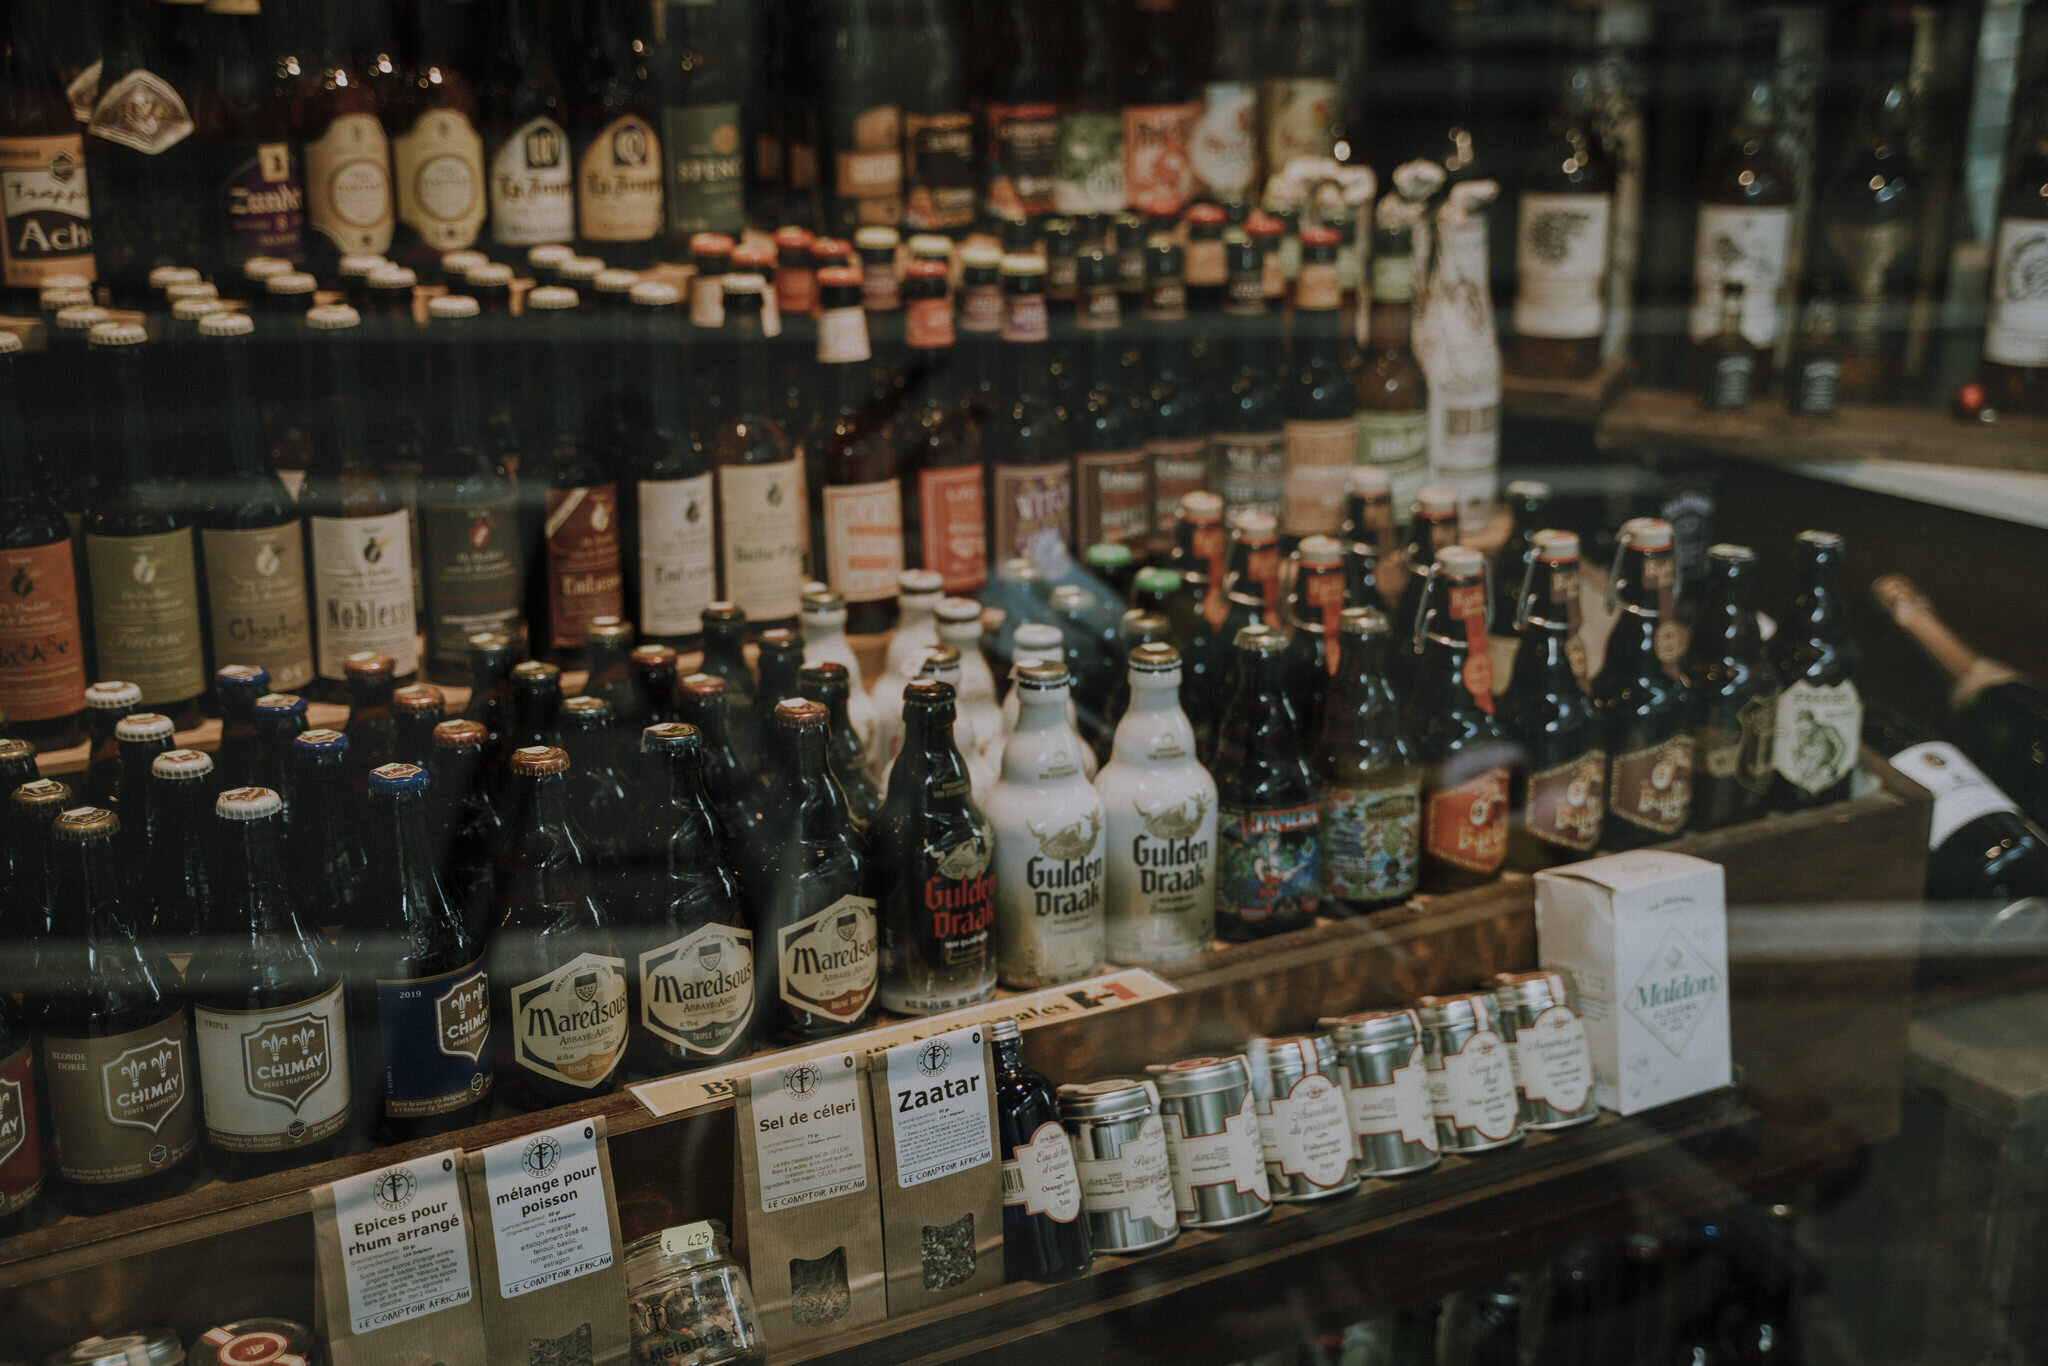  Dinant rất nổi tiếng với Craft Beer như bao thành phố khác ở Bỉ.&nbsp; 